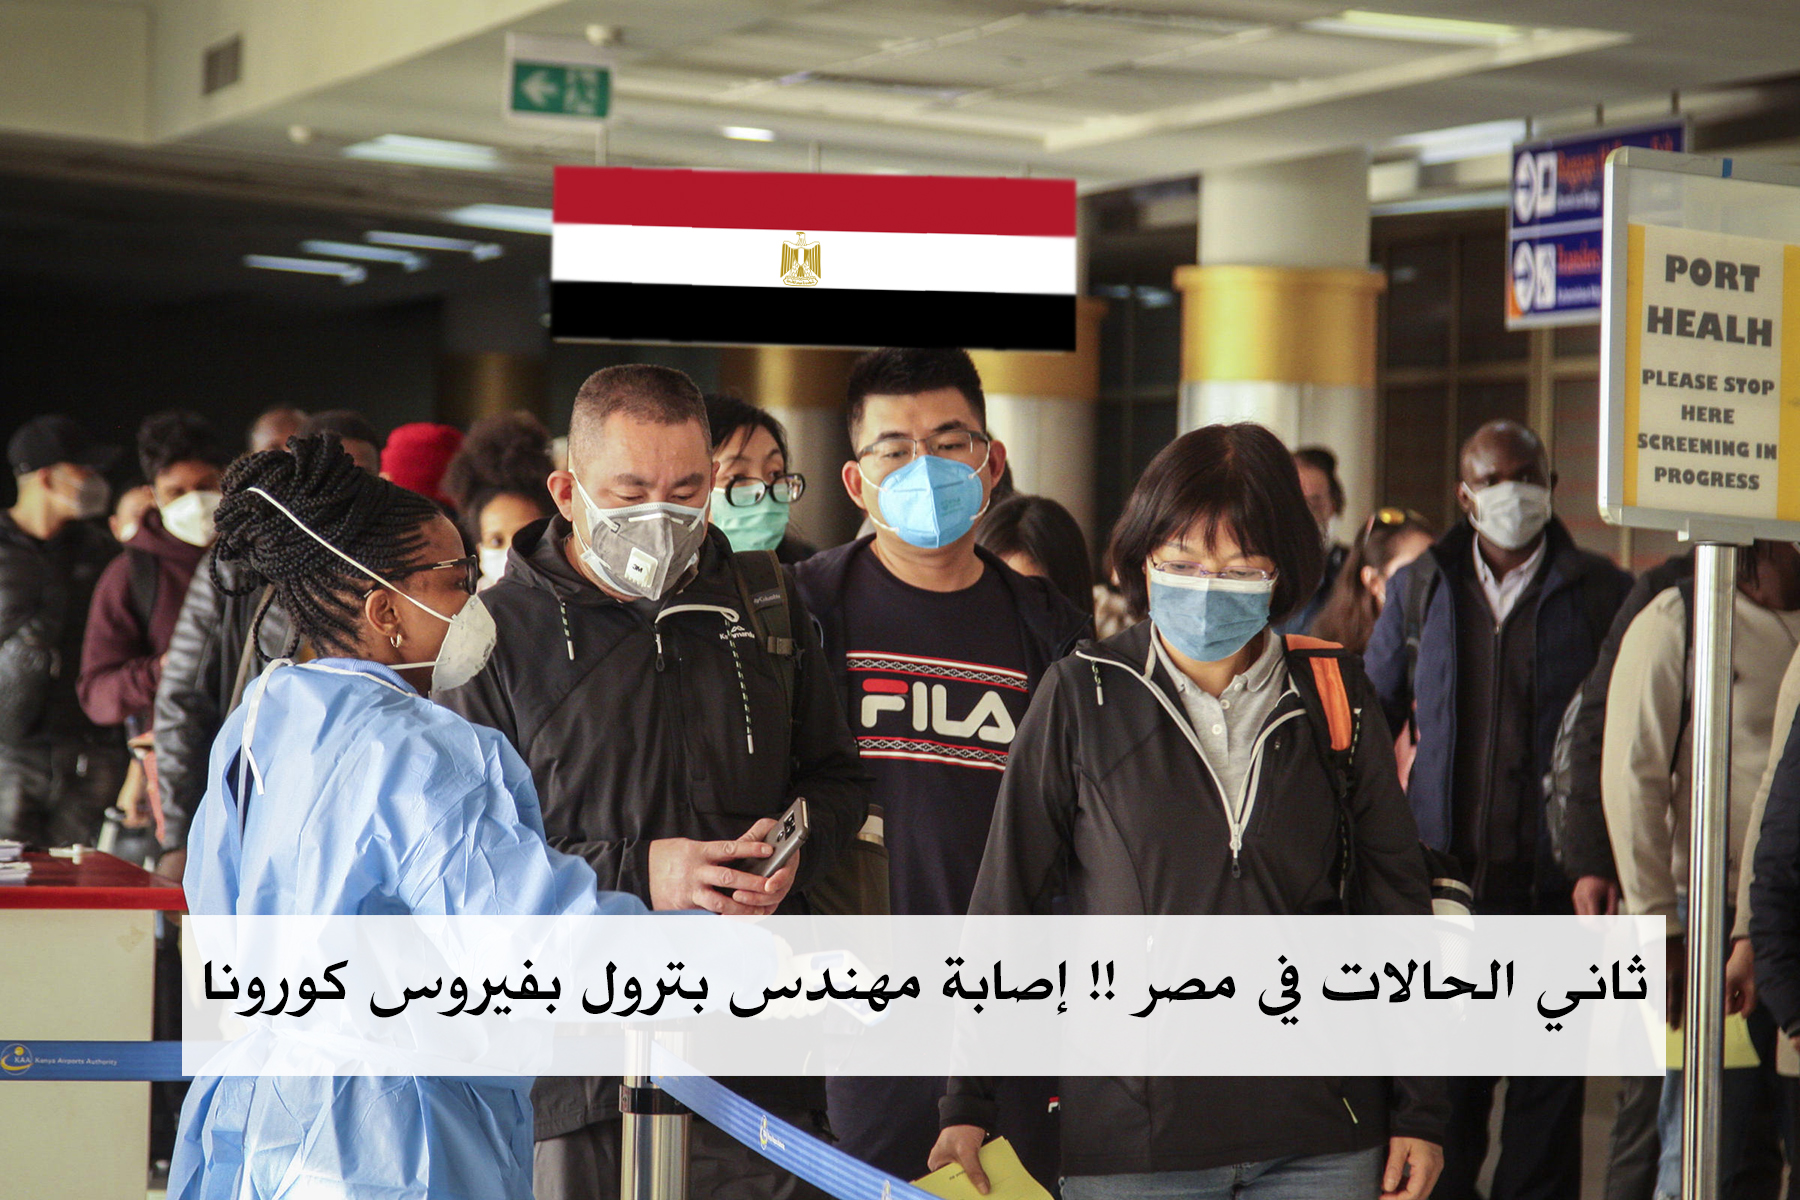 إصابة مهندس بفيروس كورونا في مصر ووزارة الصحة تُعلن: لدينا إصابتين بالفيروس حتى الآن